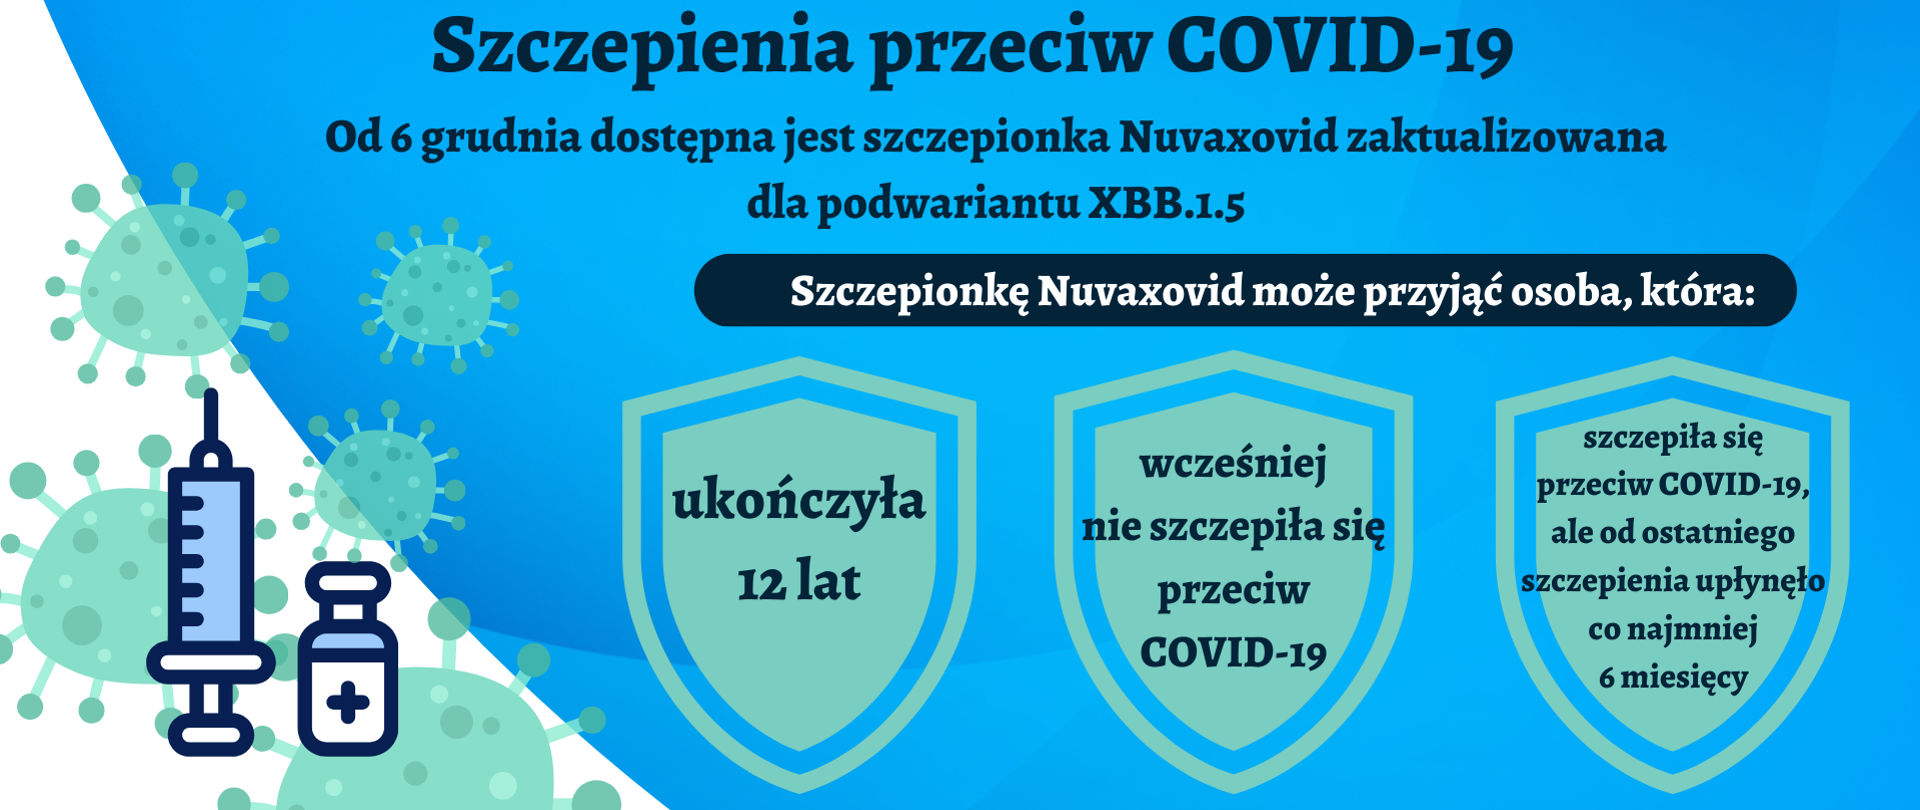 baner informujący o szczepieniach COVID-19